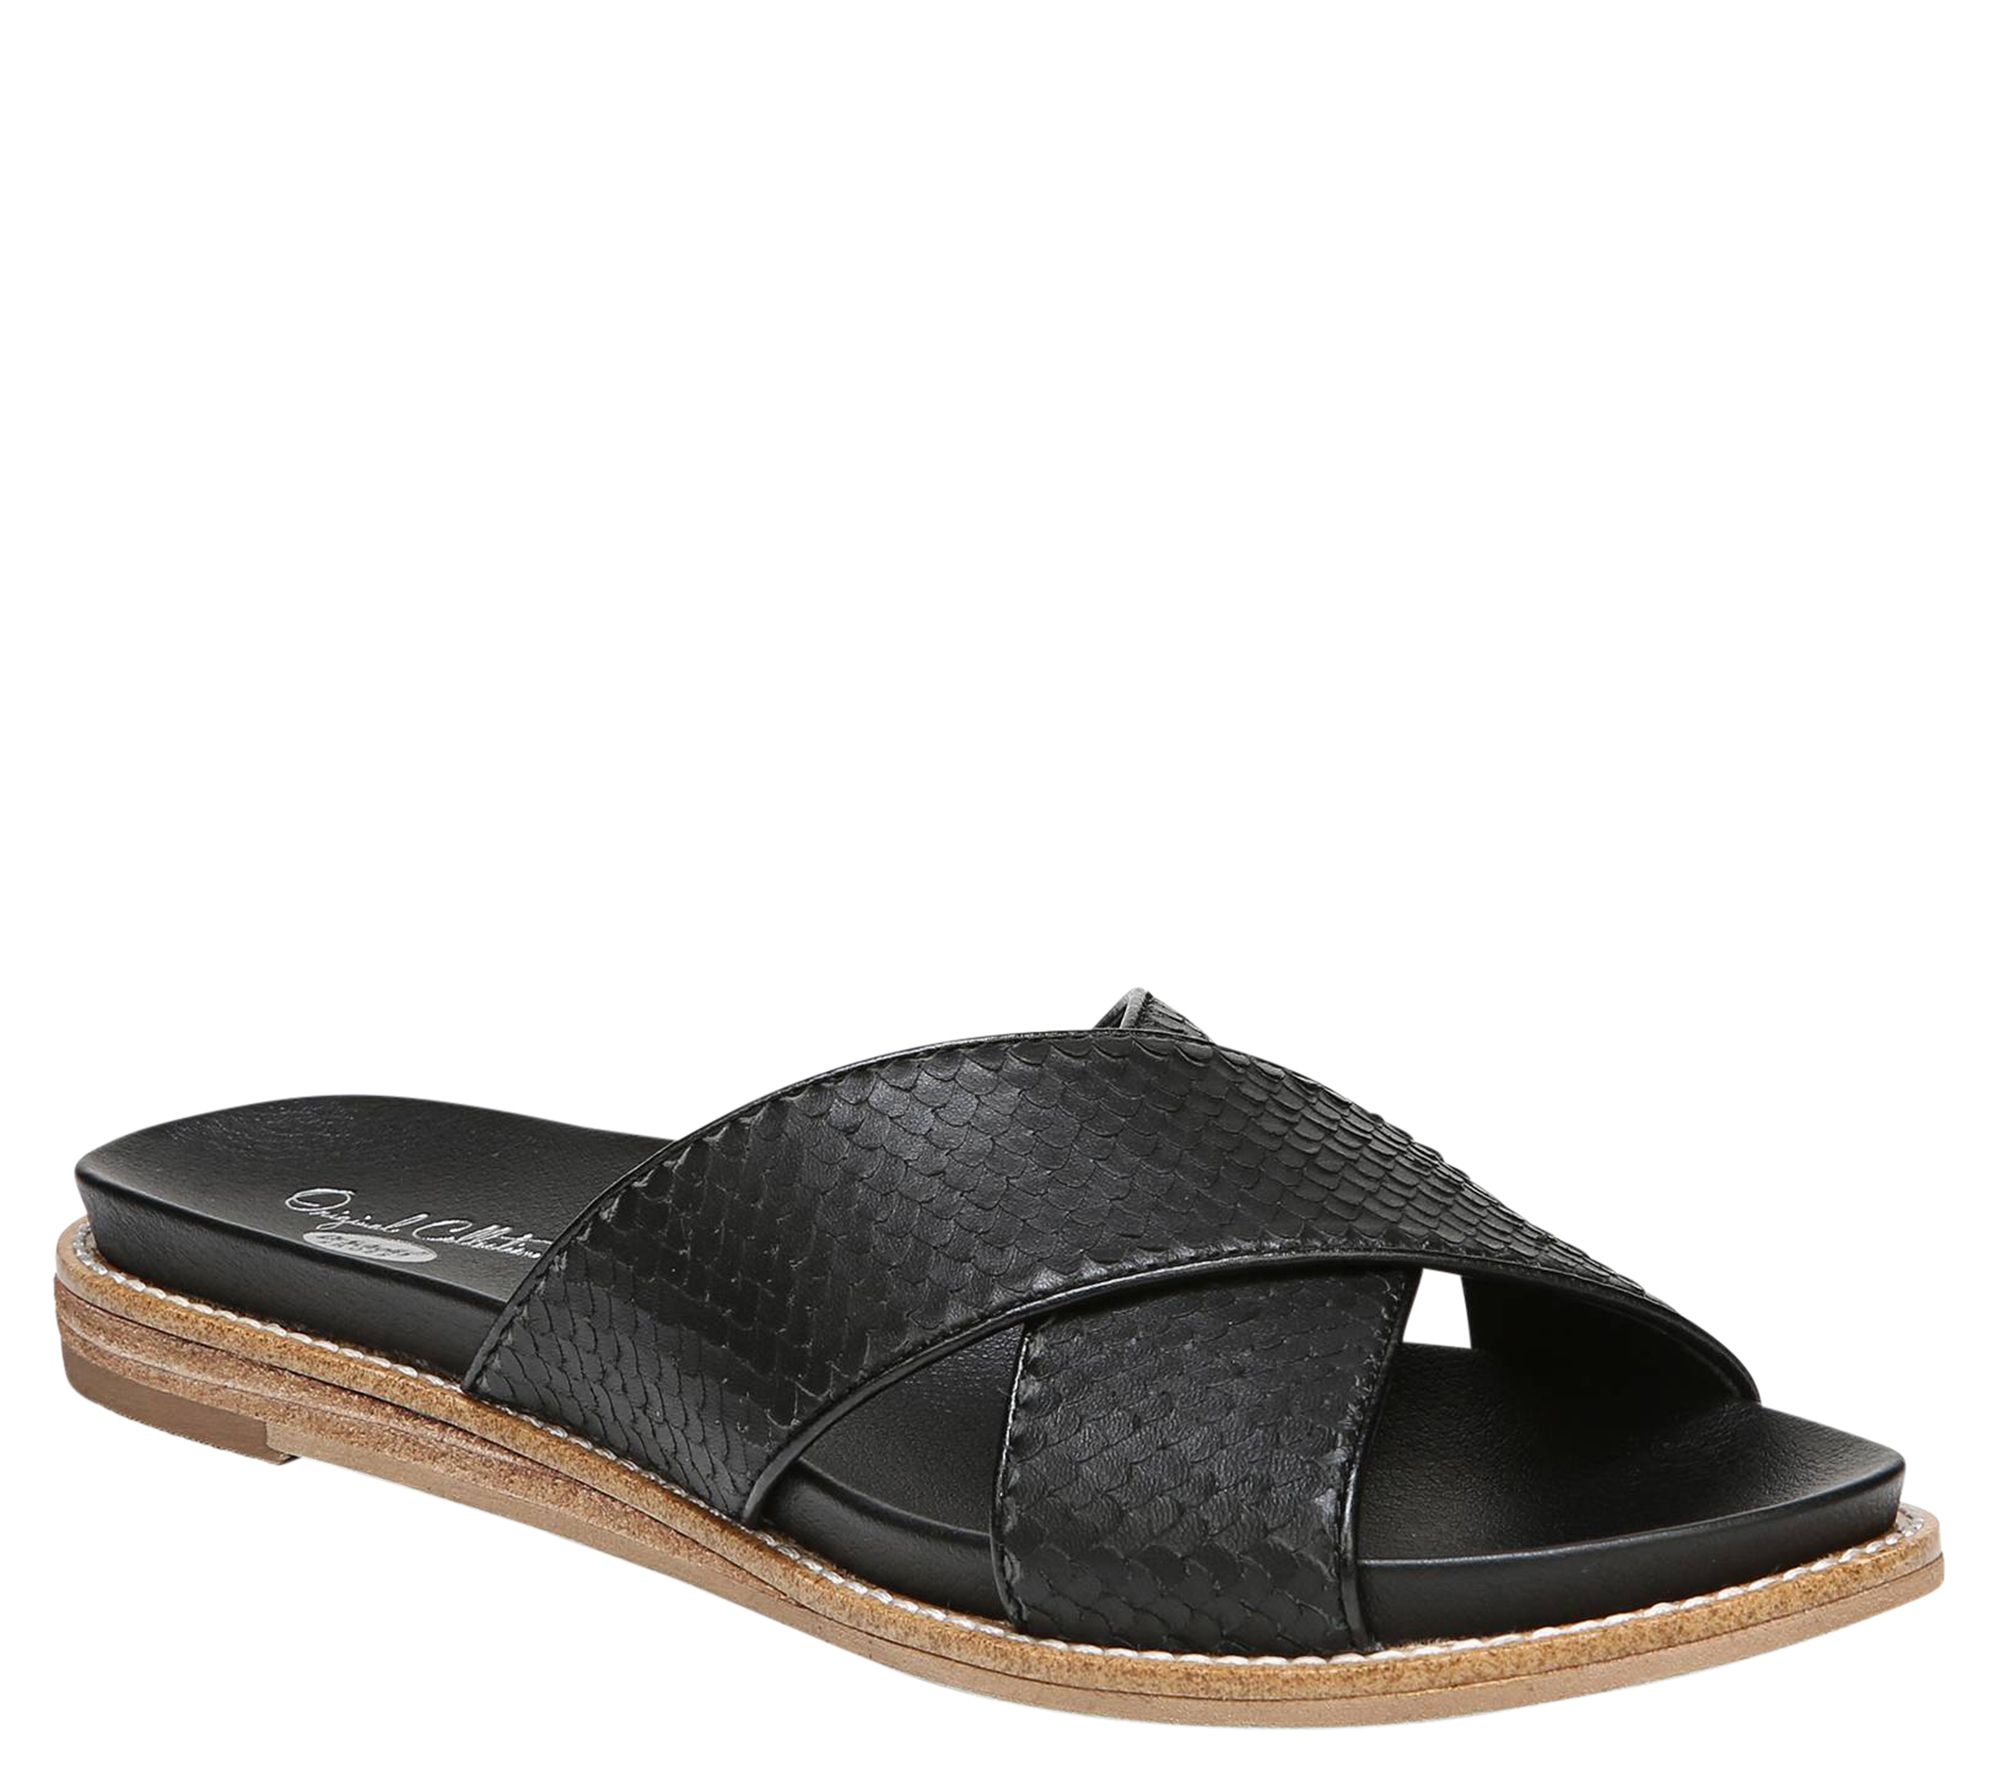 Dr. Scholl's Leather Slide Sandals - Deco - QVC.com